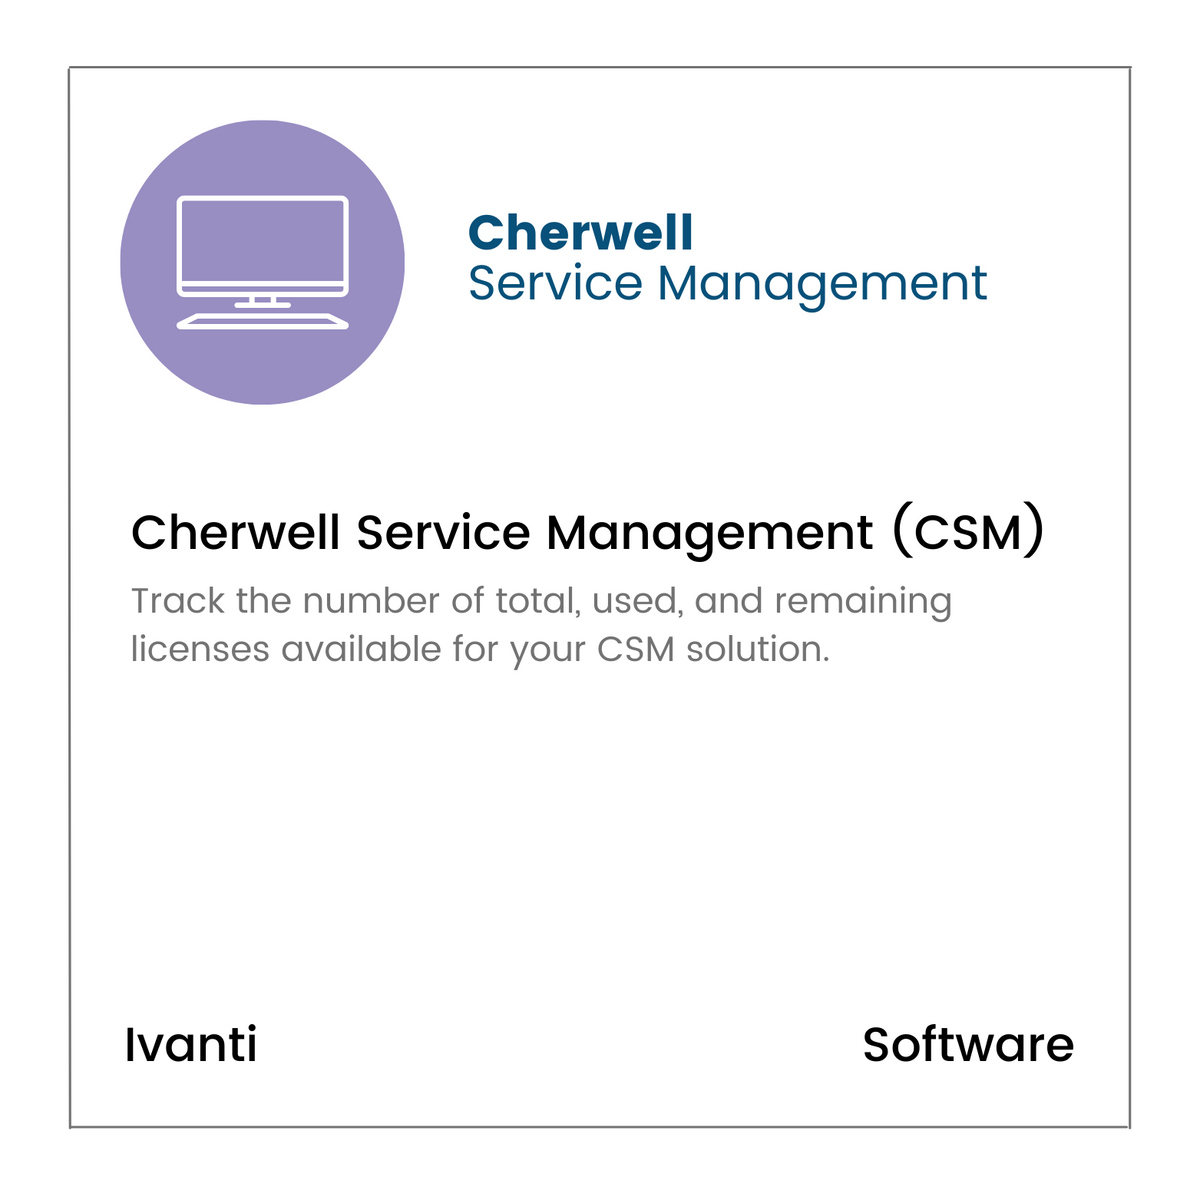 Cherwell Service Management (CSM)